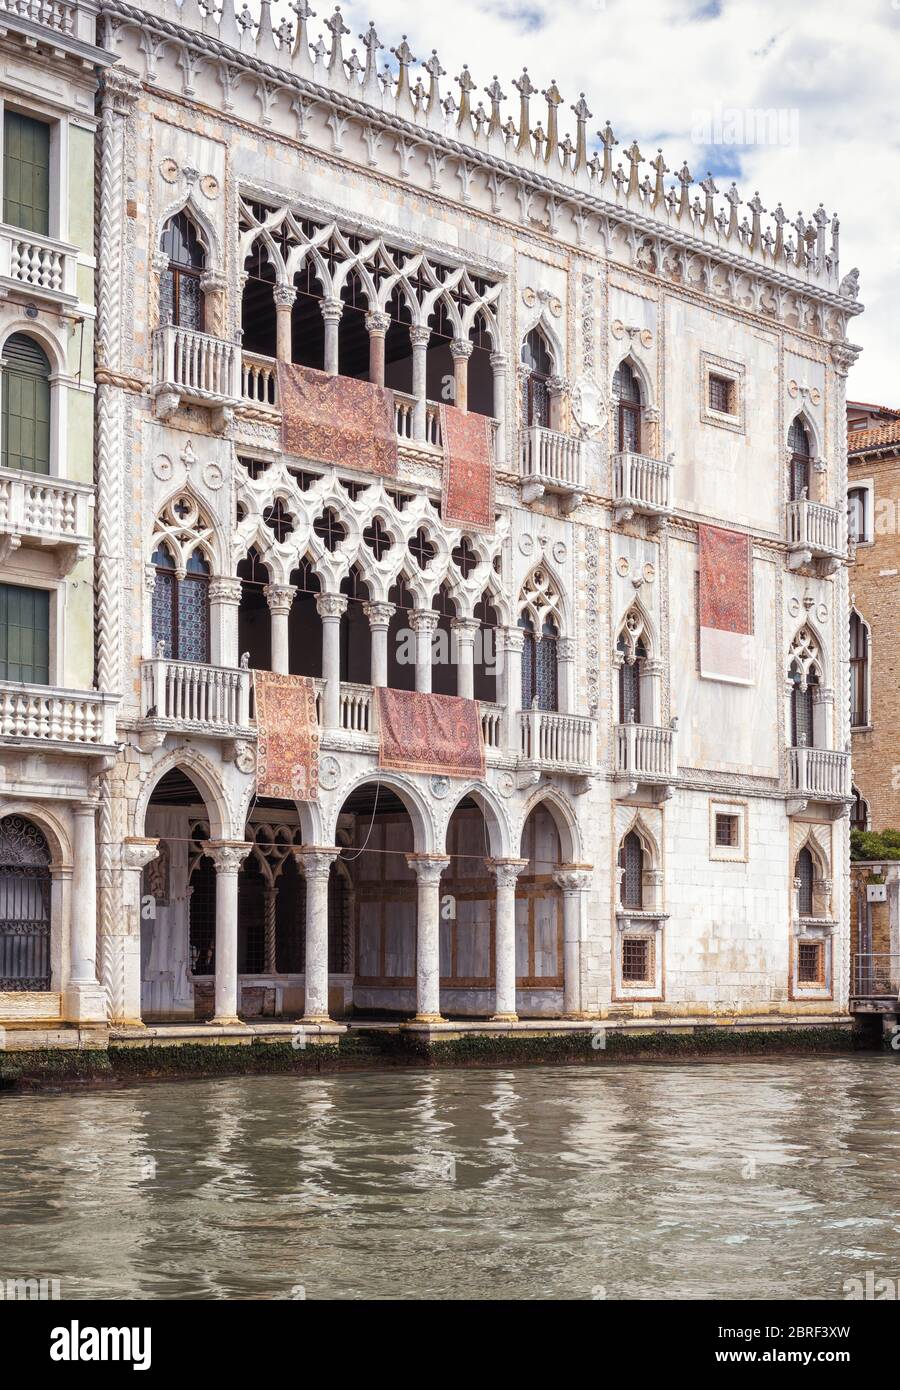 Ca' d'Oro Palast am Canale Grande, Venedig, Italien. Ca' d'Oro oder Golden House ist einer der älteren Paläste in Venedig. Schöne Fassade von Venedig landma Stockfoto